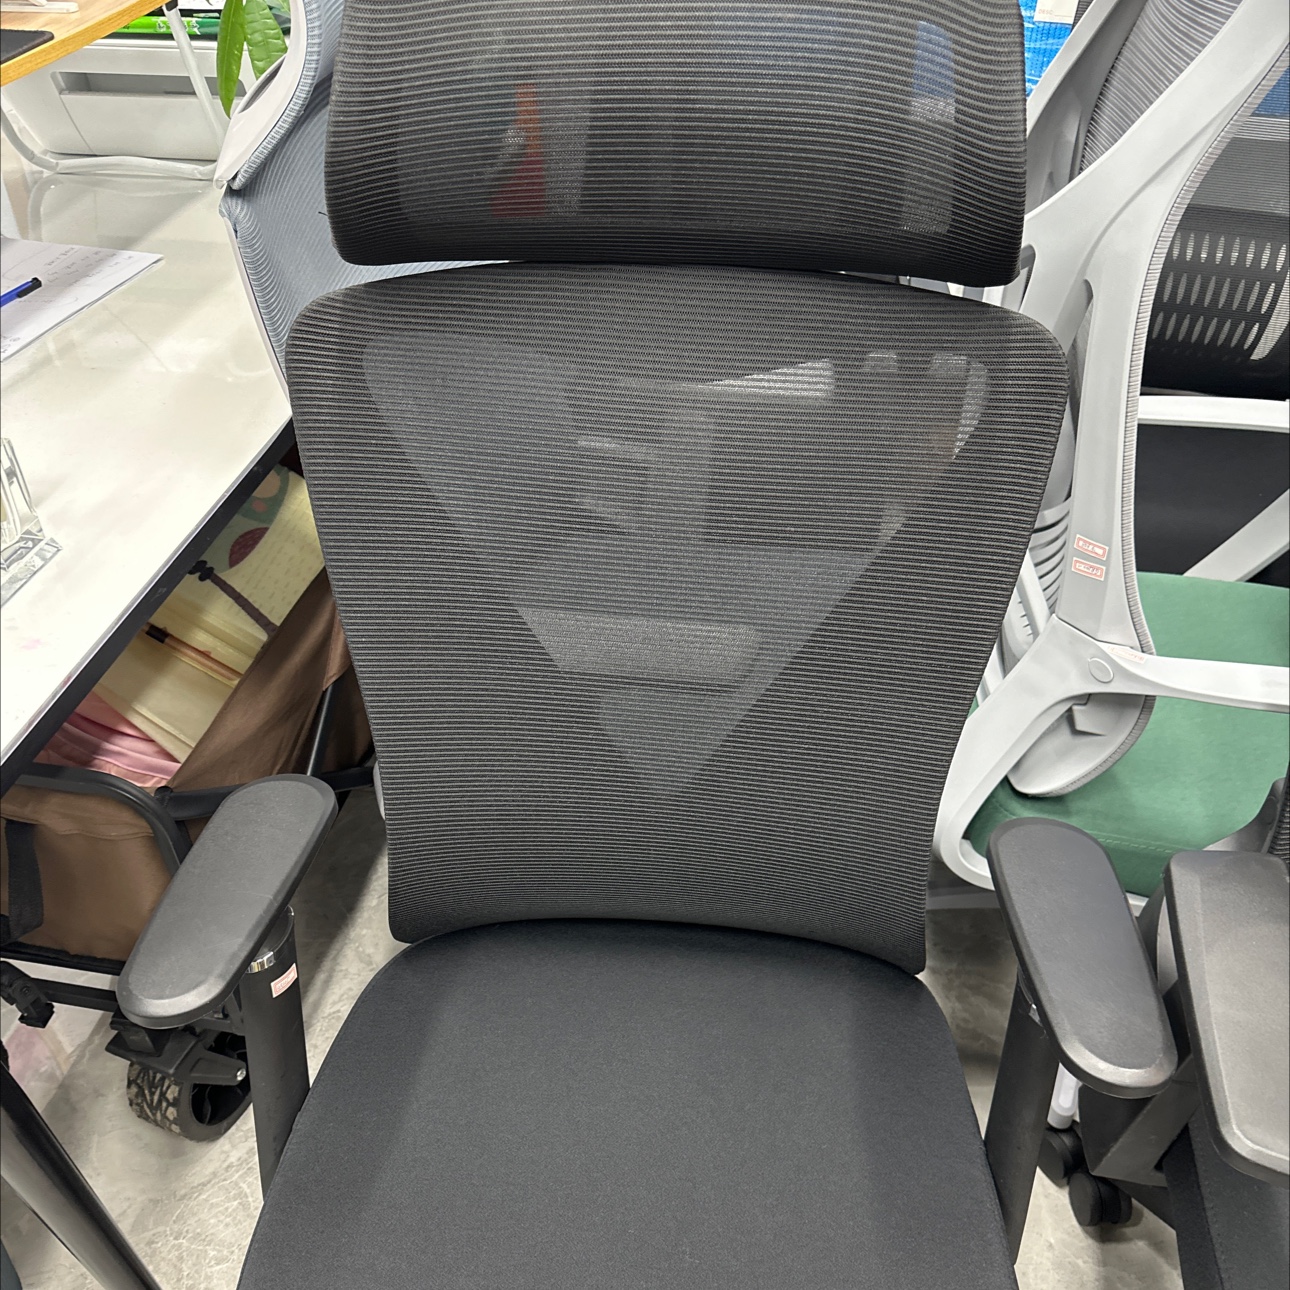 高级舒适办公椅 Office chair-13 专业设计人体工学座椅 办公室必备良品